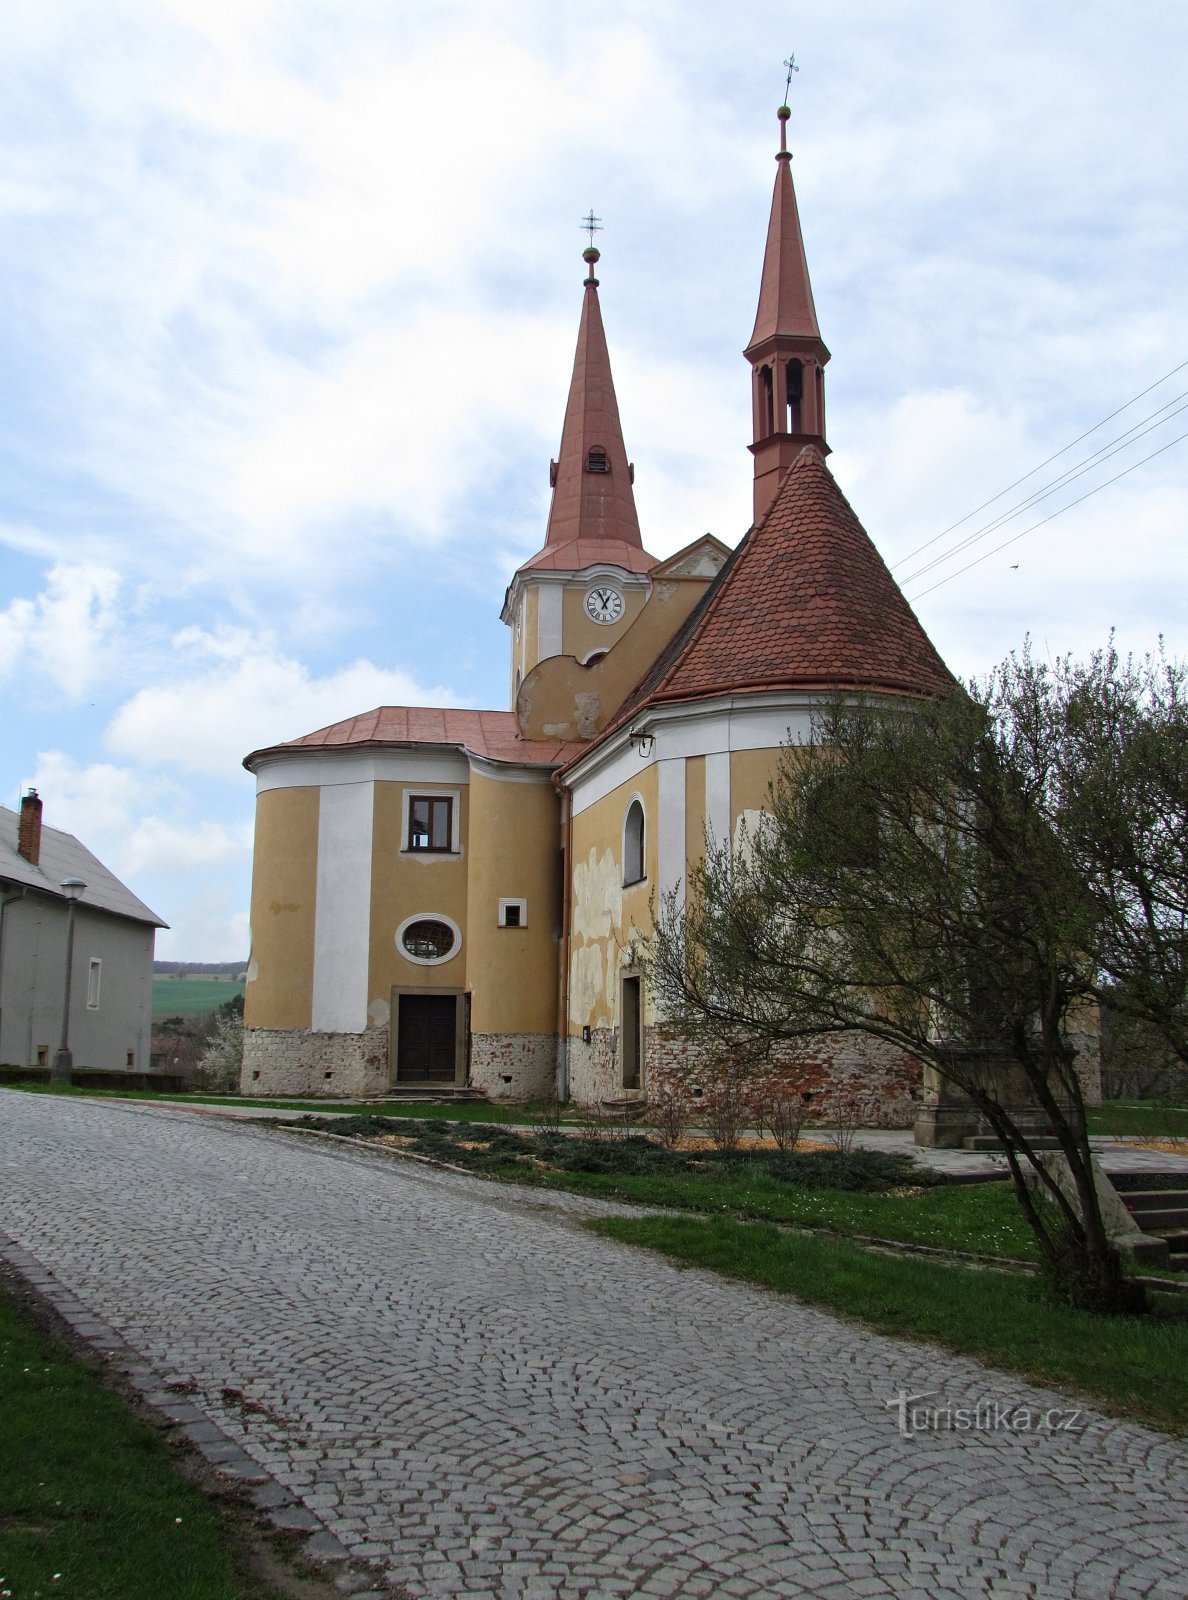 Pačlavice - Nhà thờ St. Martin